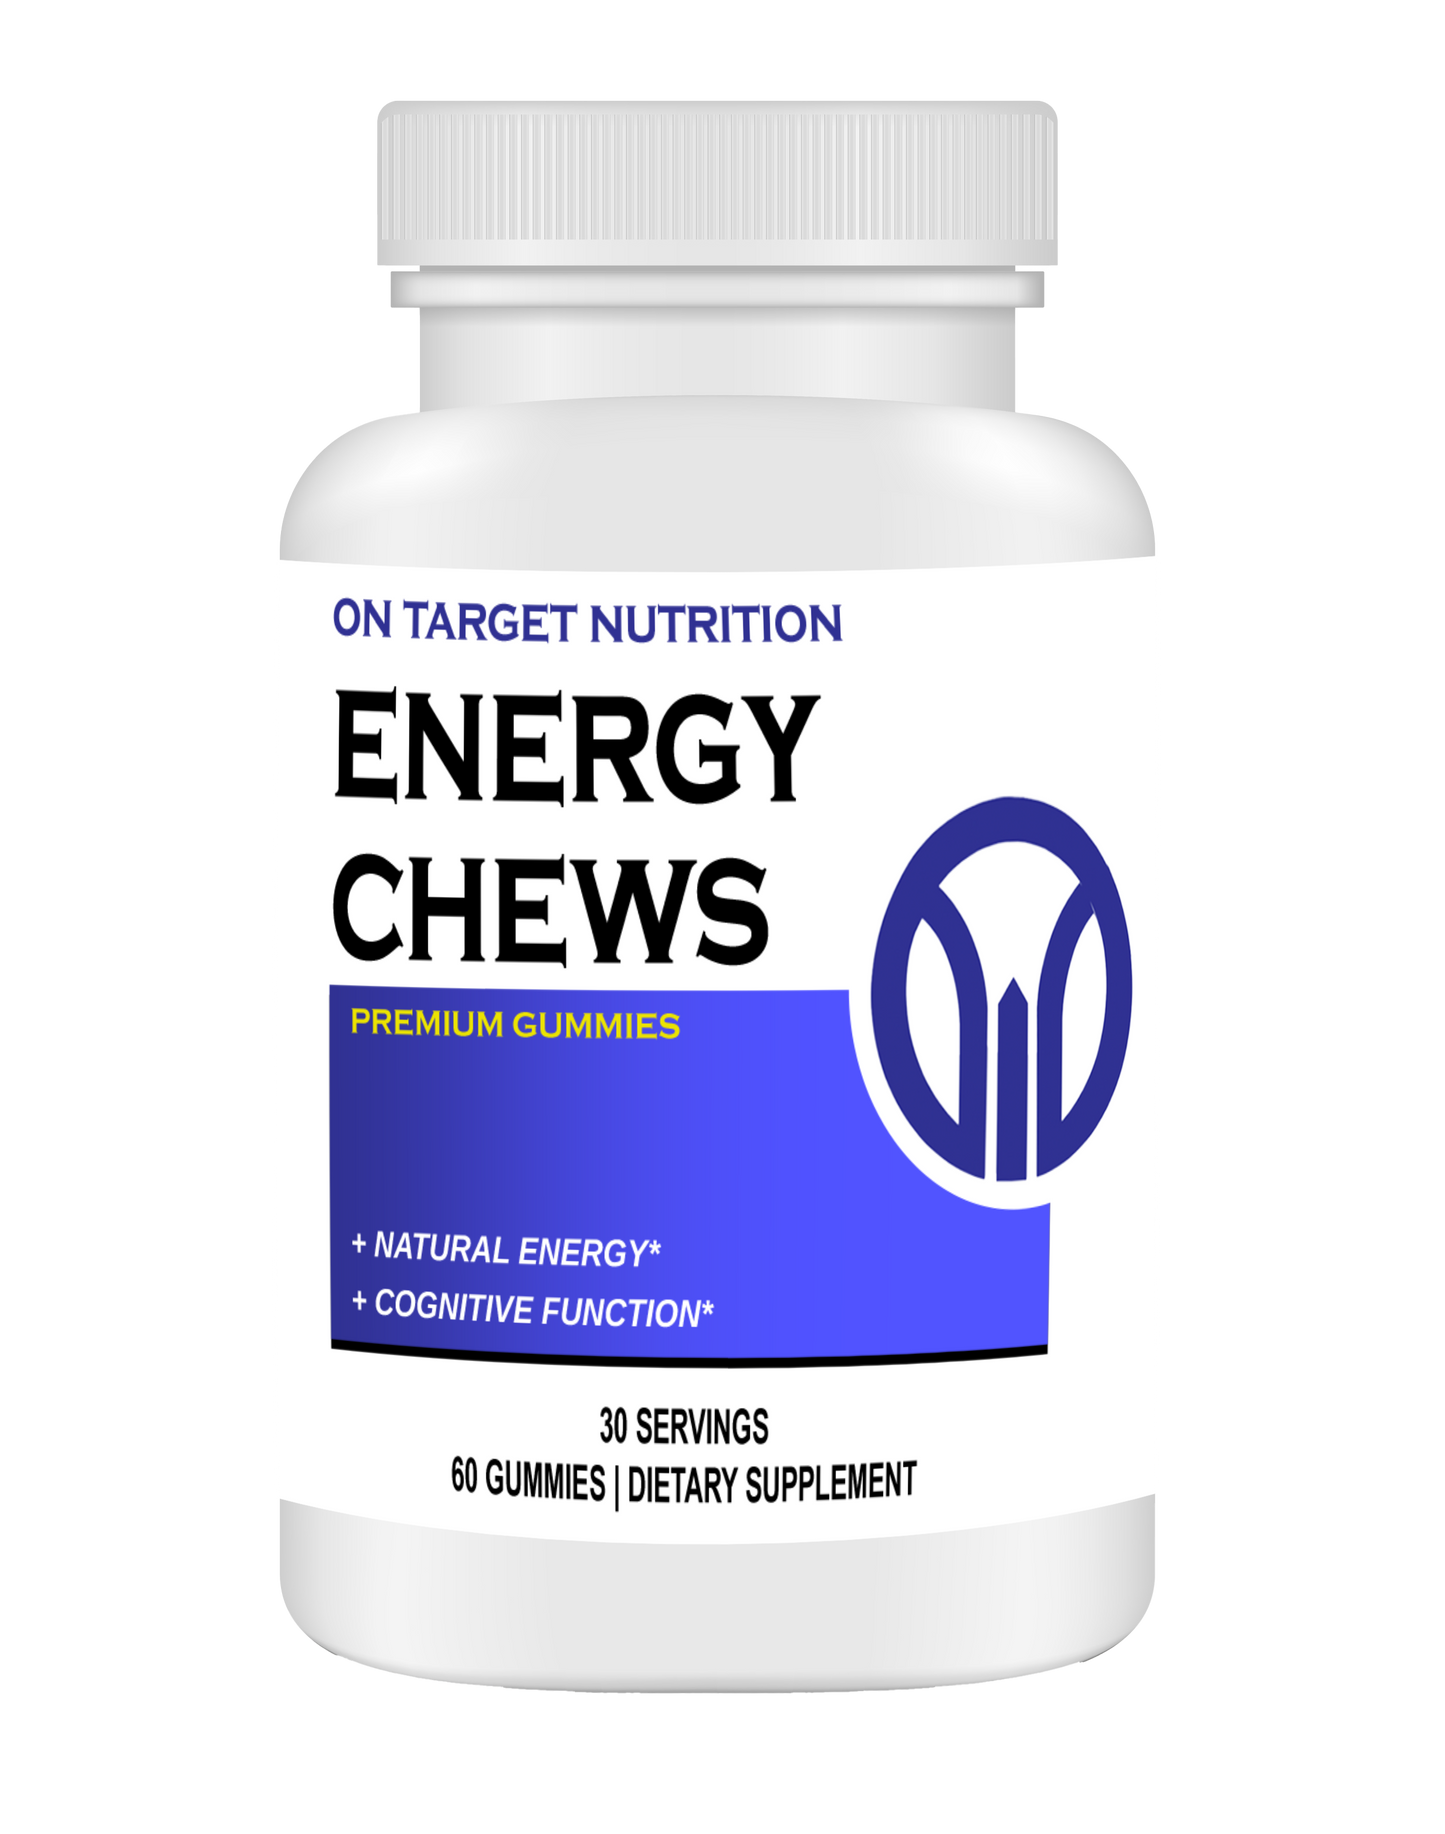 Energy Chews